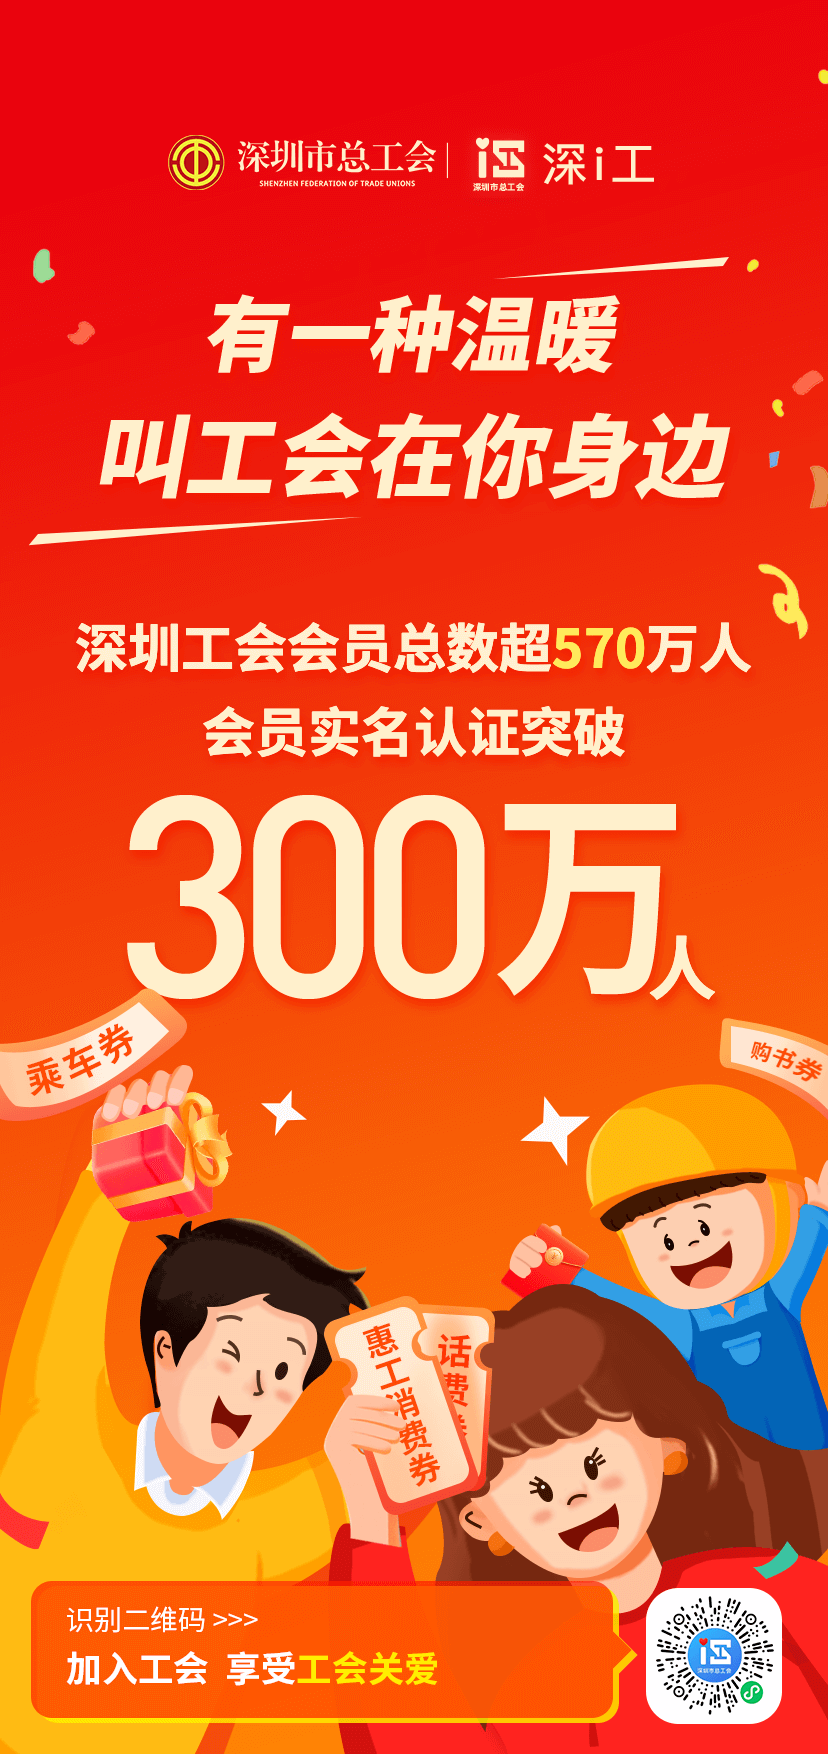 手机卡实名认证:深圳工会实名认证会员突破300万啦！36万份好礼等着你